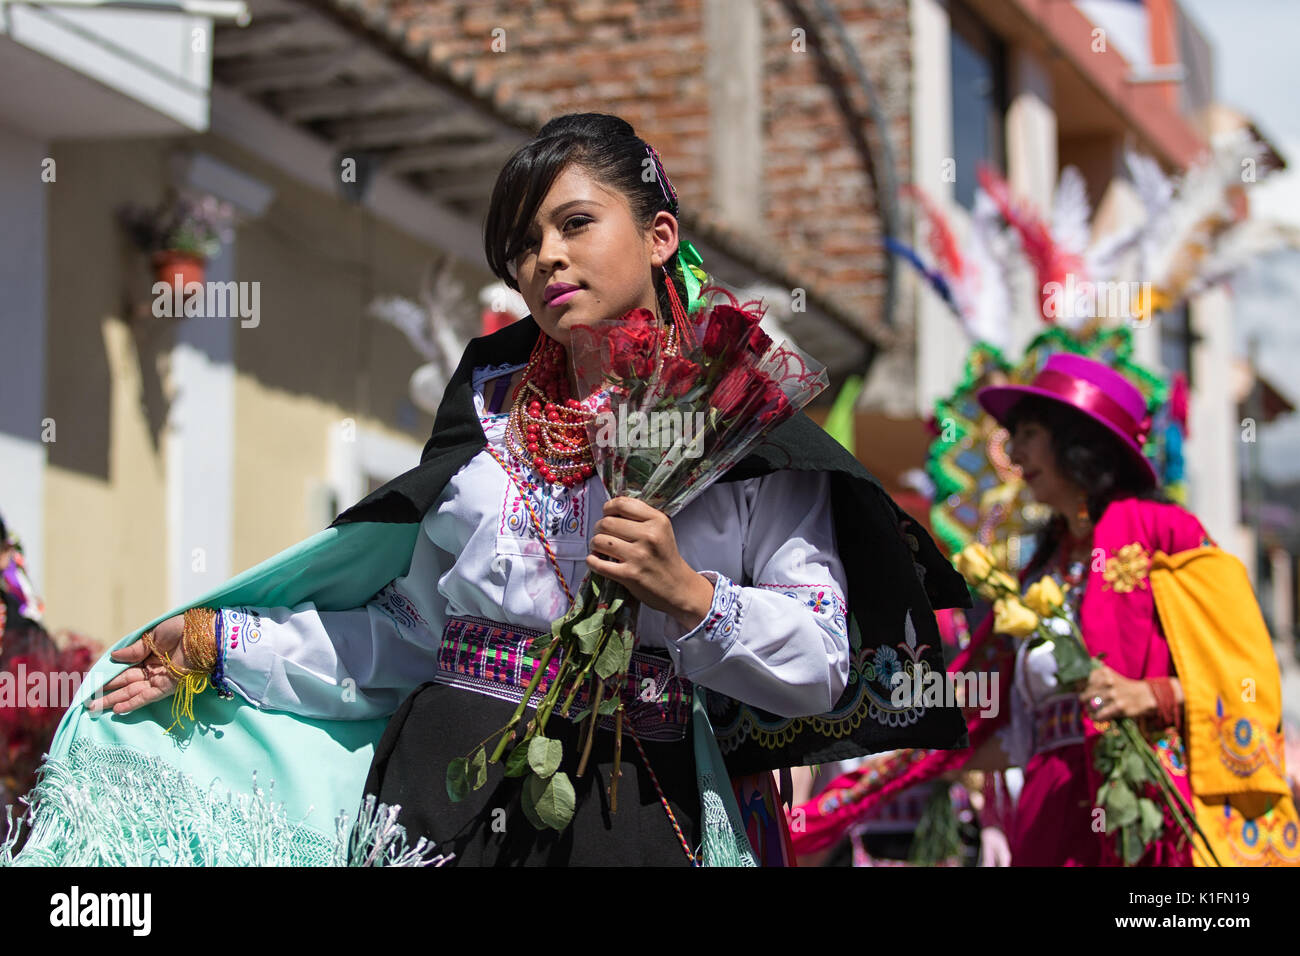 Juni 17, 2017 Pujili, Ecuador: Frau mit einem bunten Kostüm an der jährlichen Corpus Christi parade Blumen Holding marschieren Stockfoto